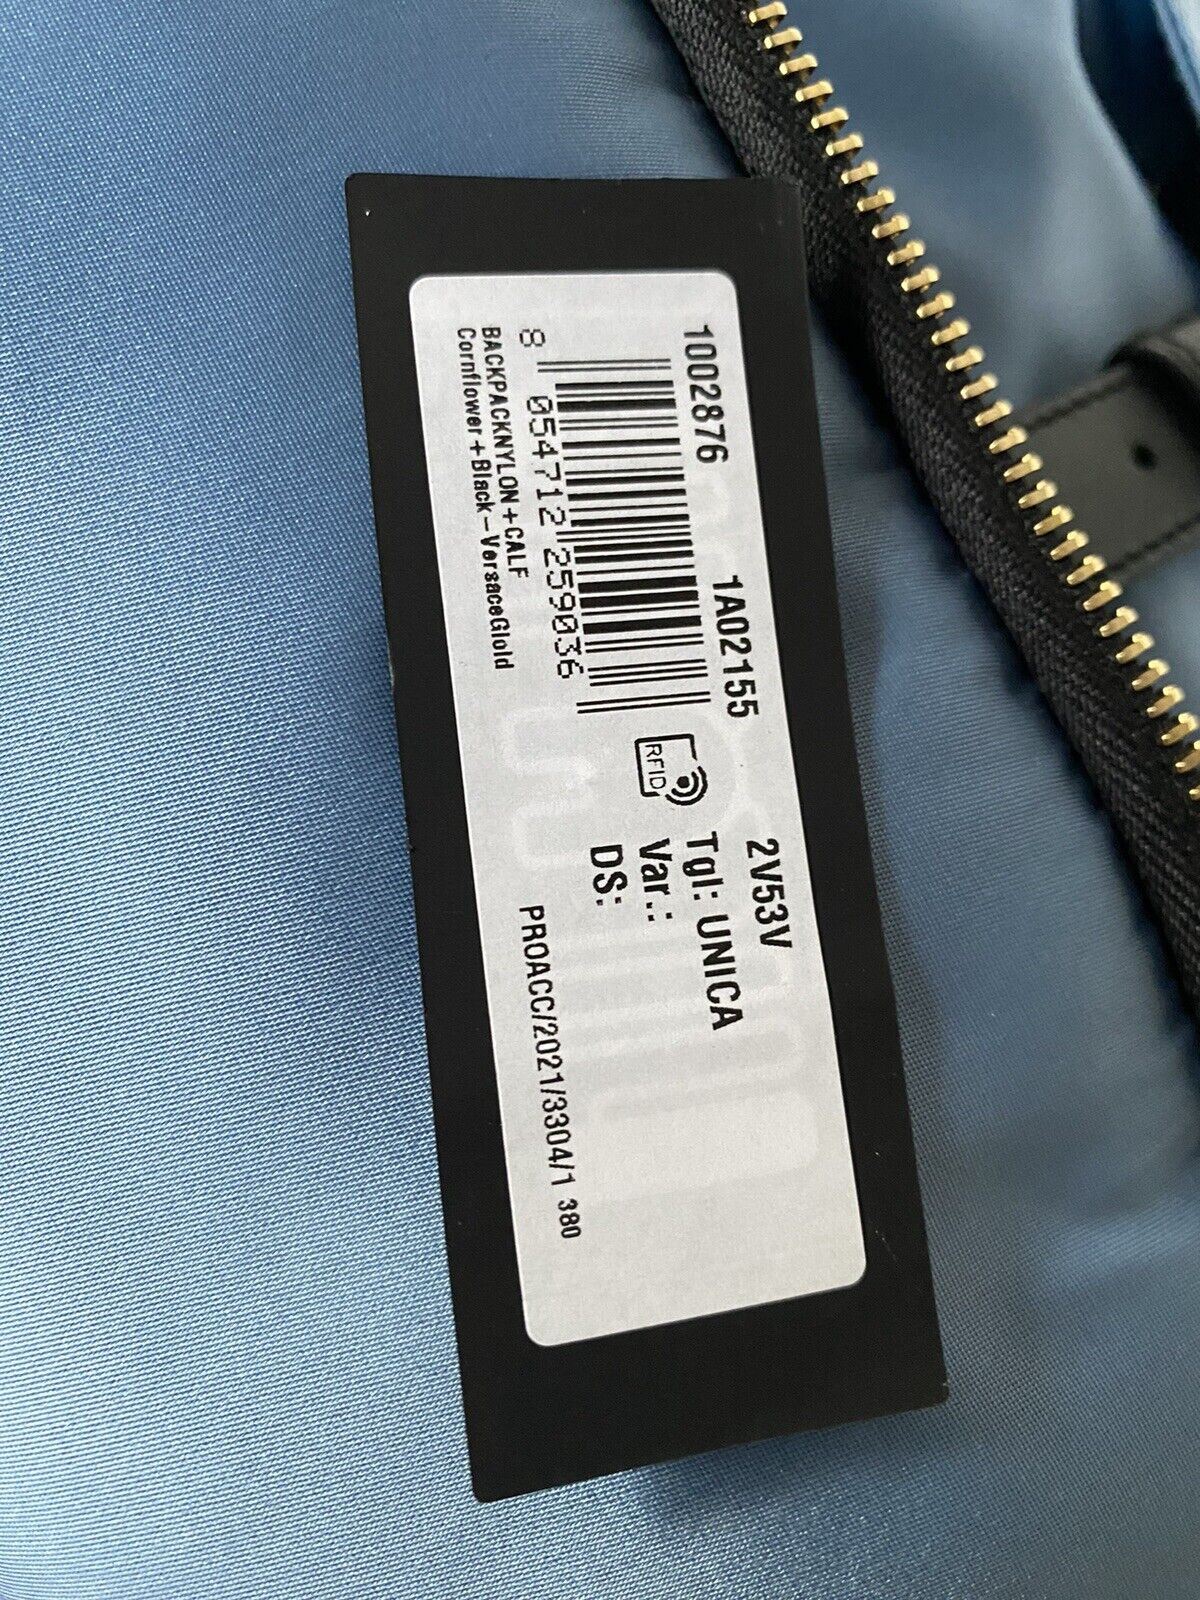 Рюкзак NWT Versace из нейлона/кожи василькового цвета, производство Италия 1002876 1A02155 